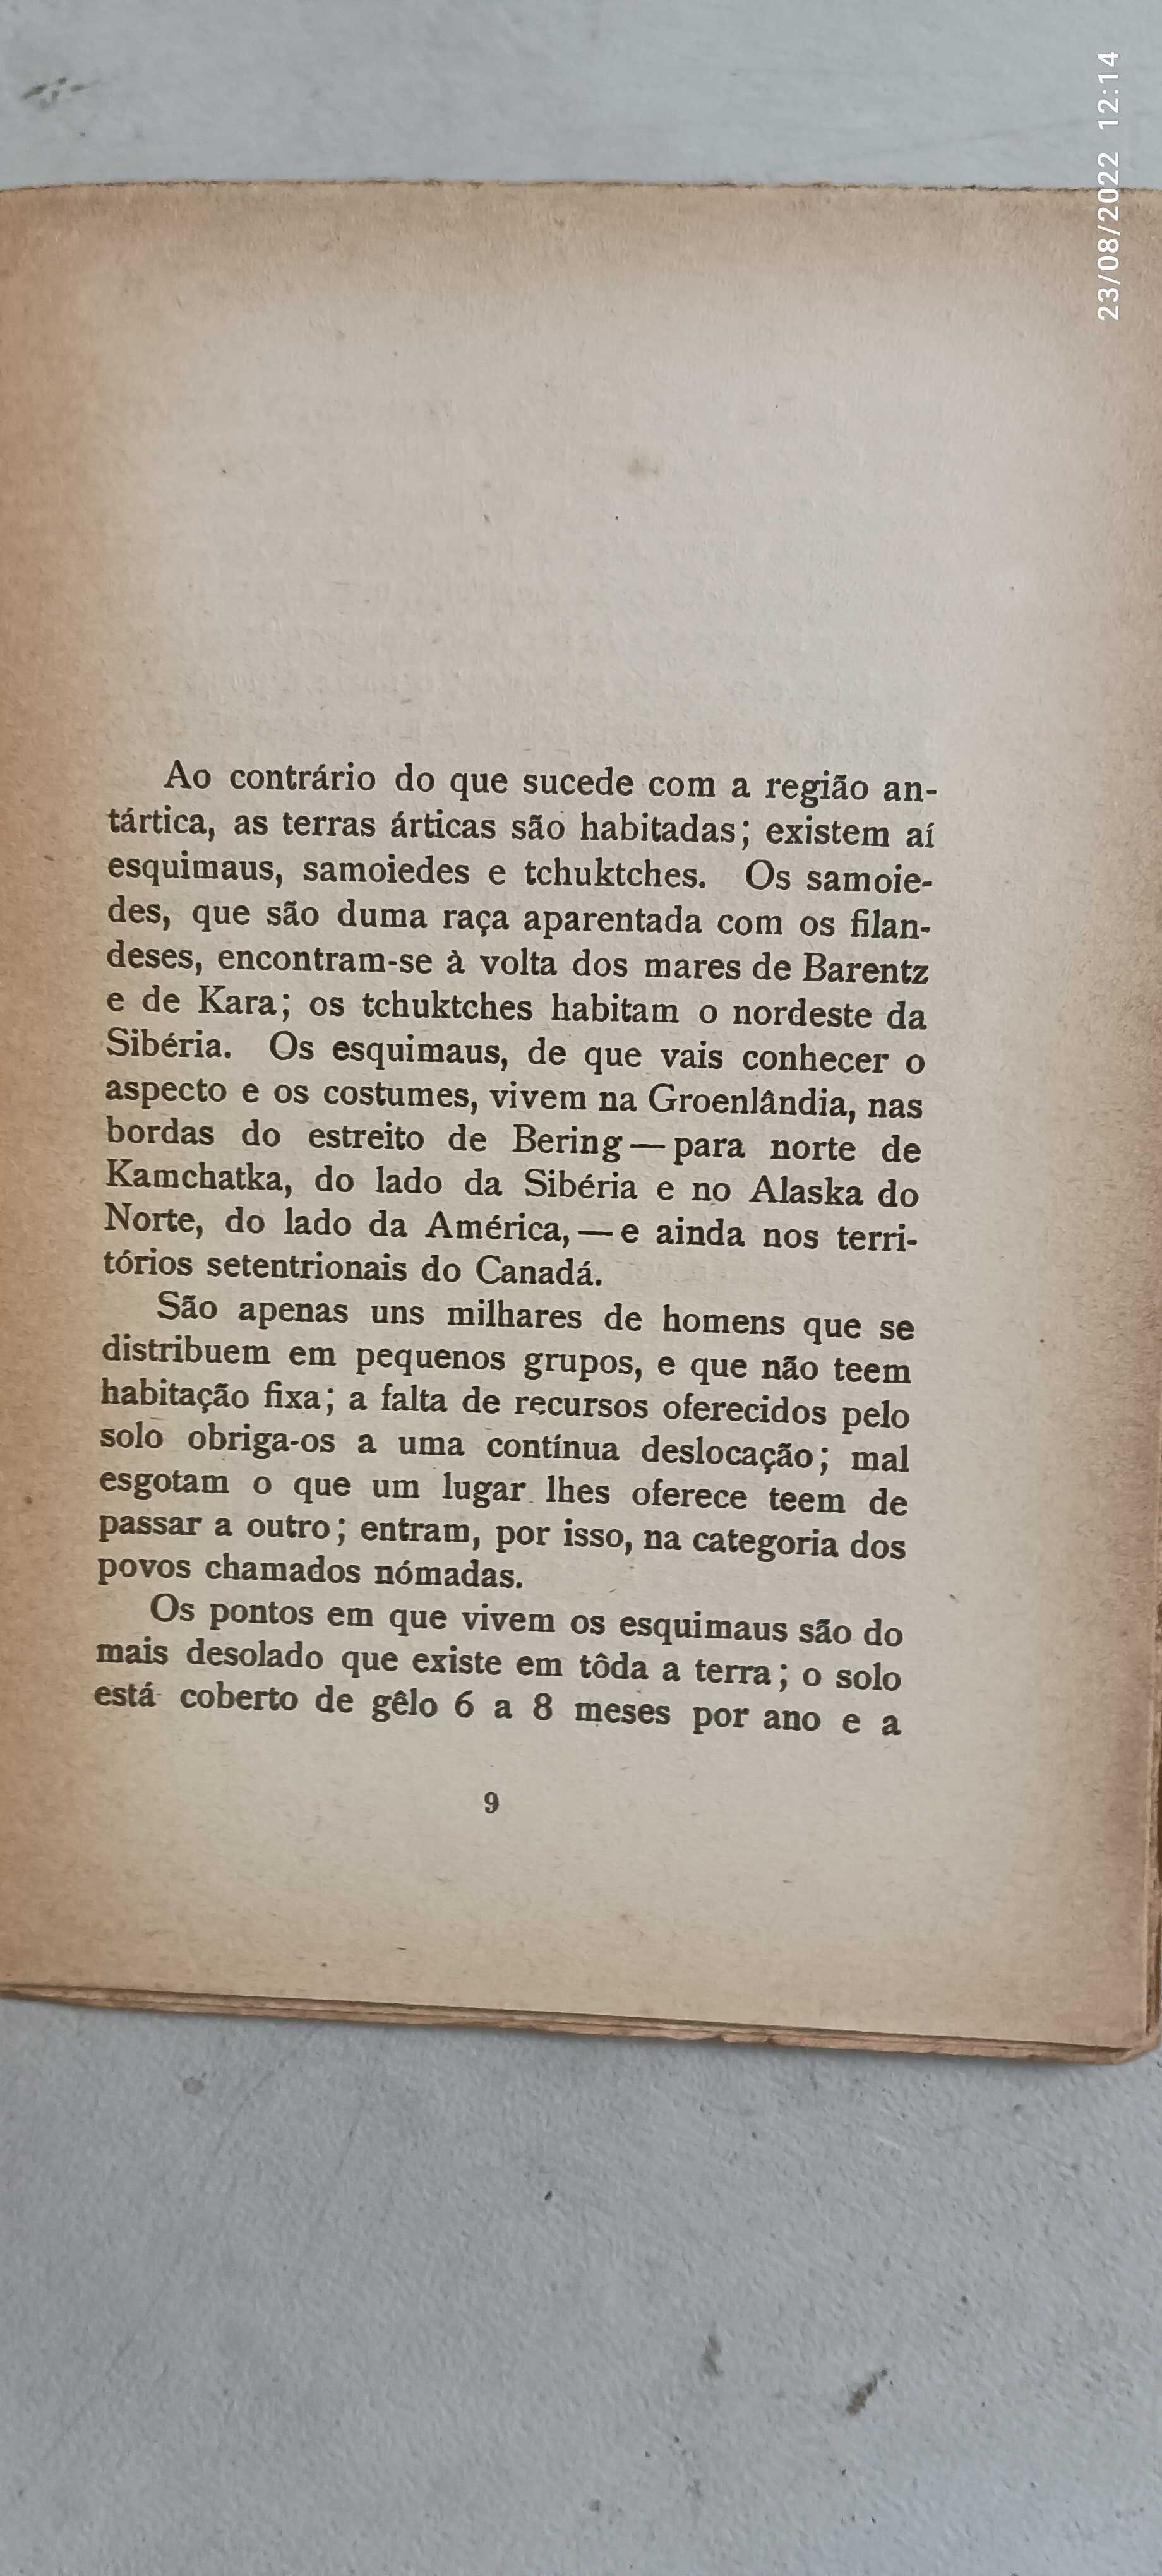 Livro Pa-3 - Agostinho da Silva - A vida dos Esquimaus